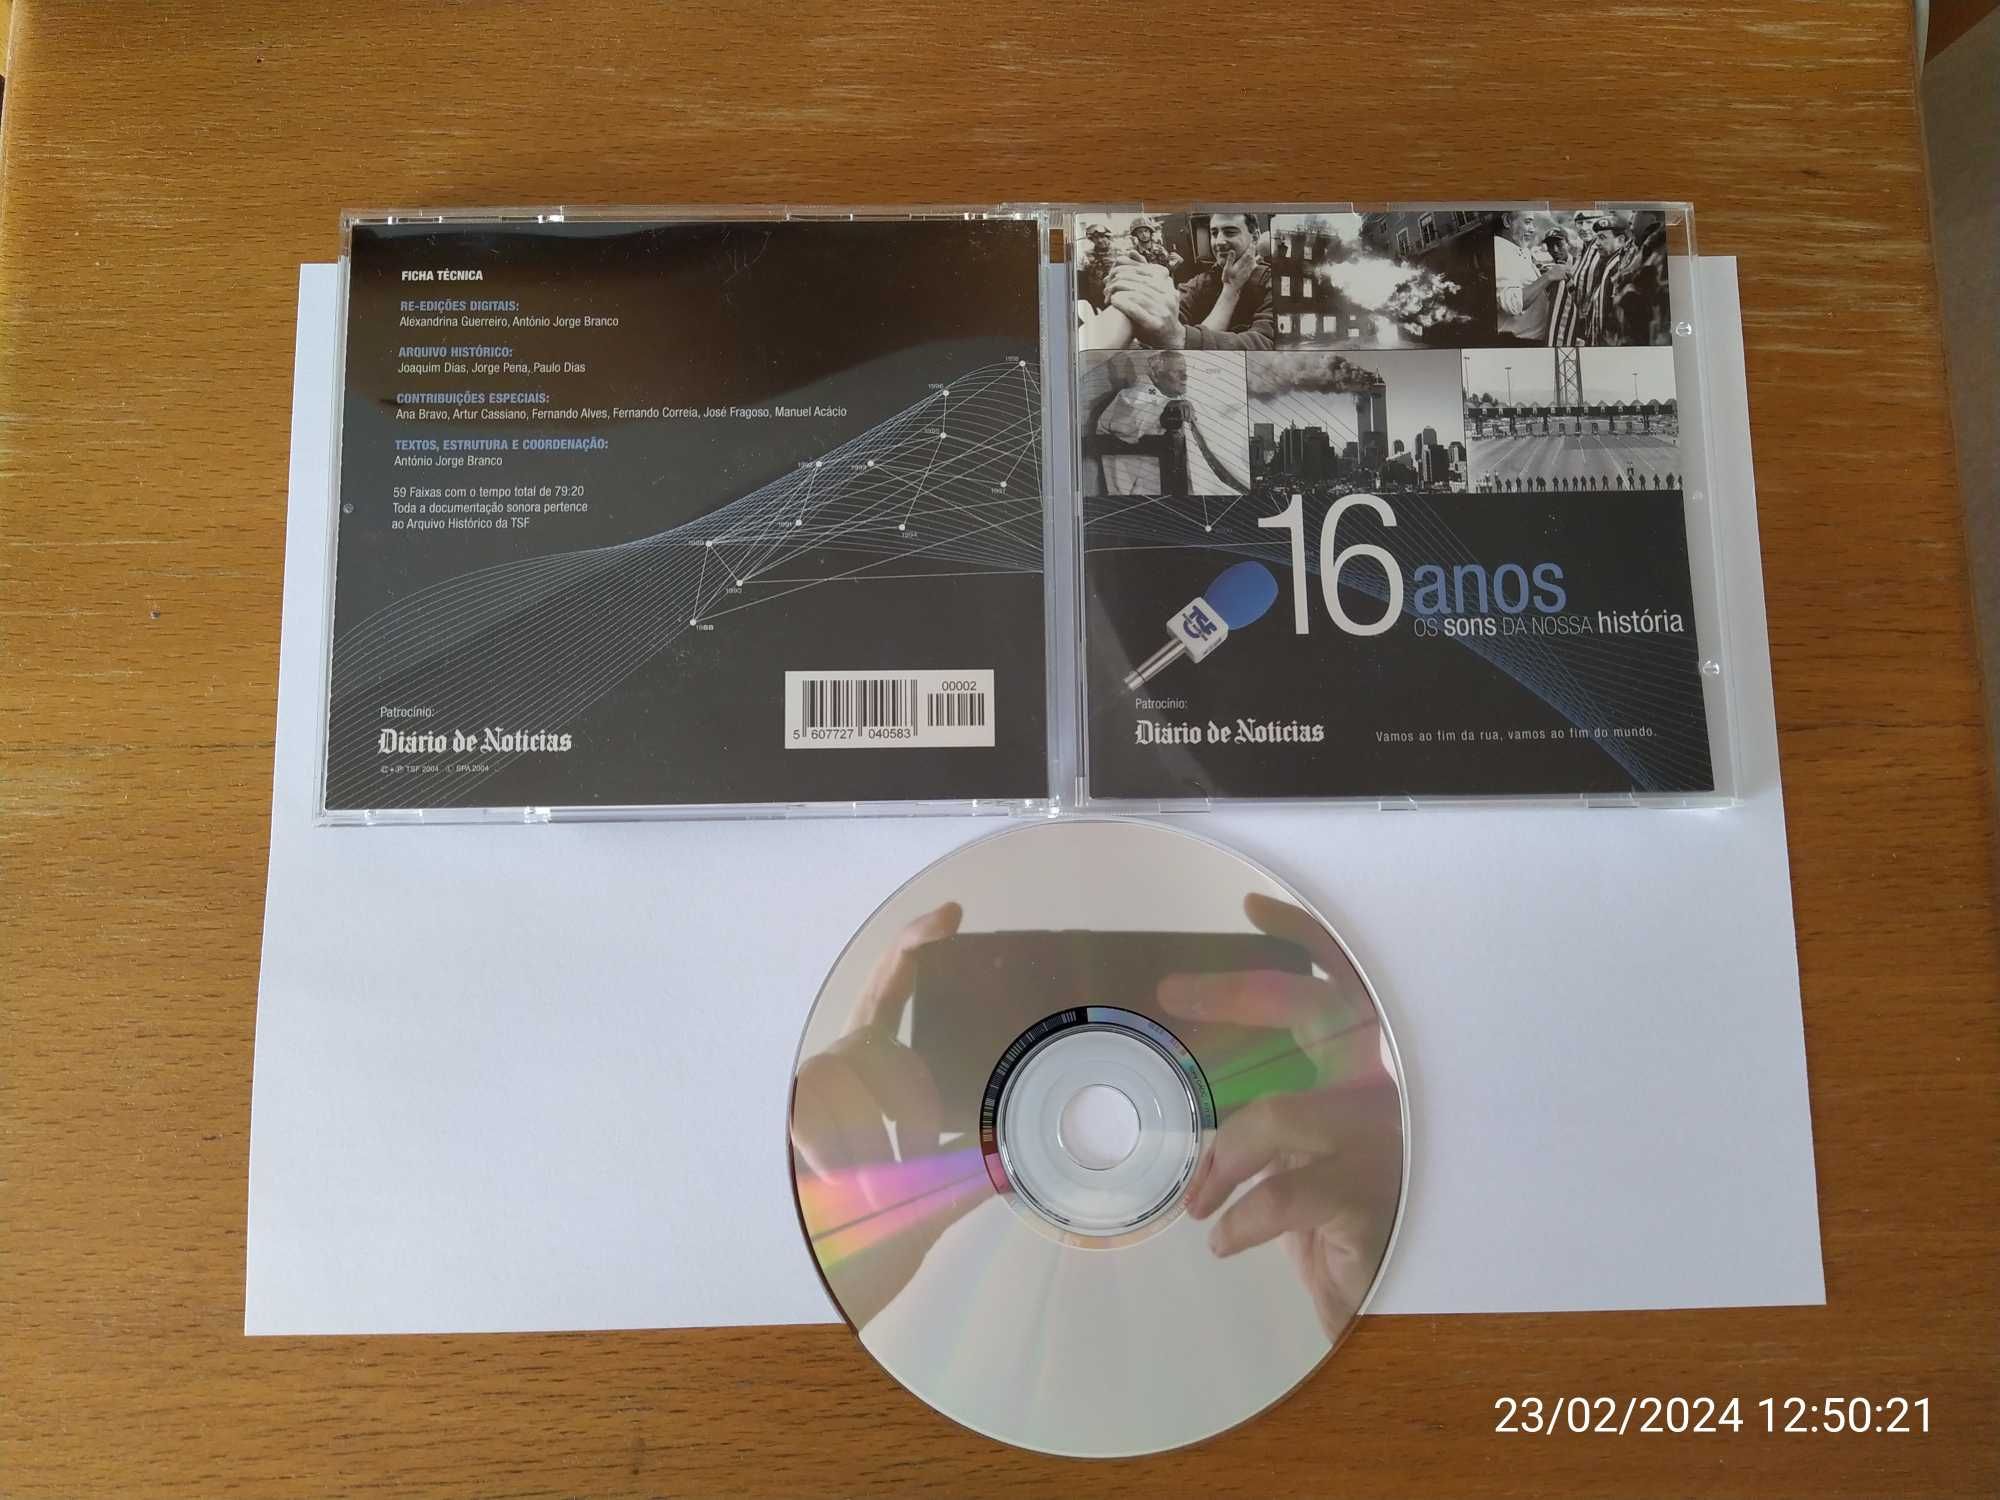 ## cd audio documentário Tsf 16 anos os sons da nossa história ##